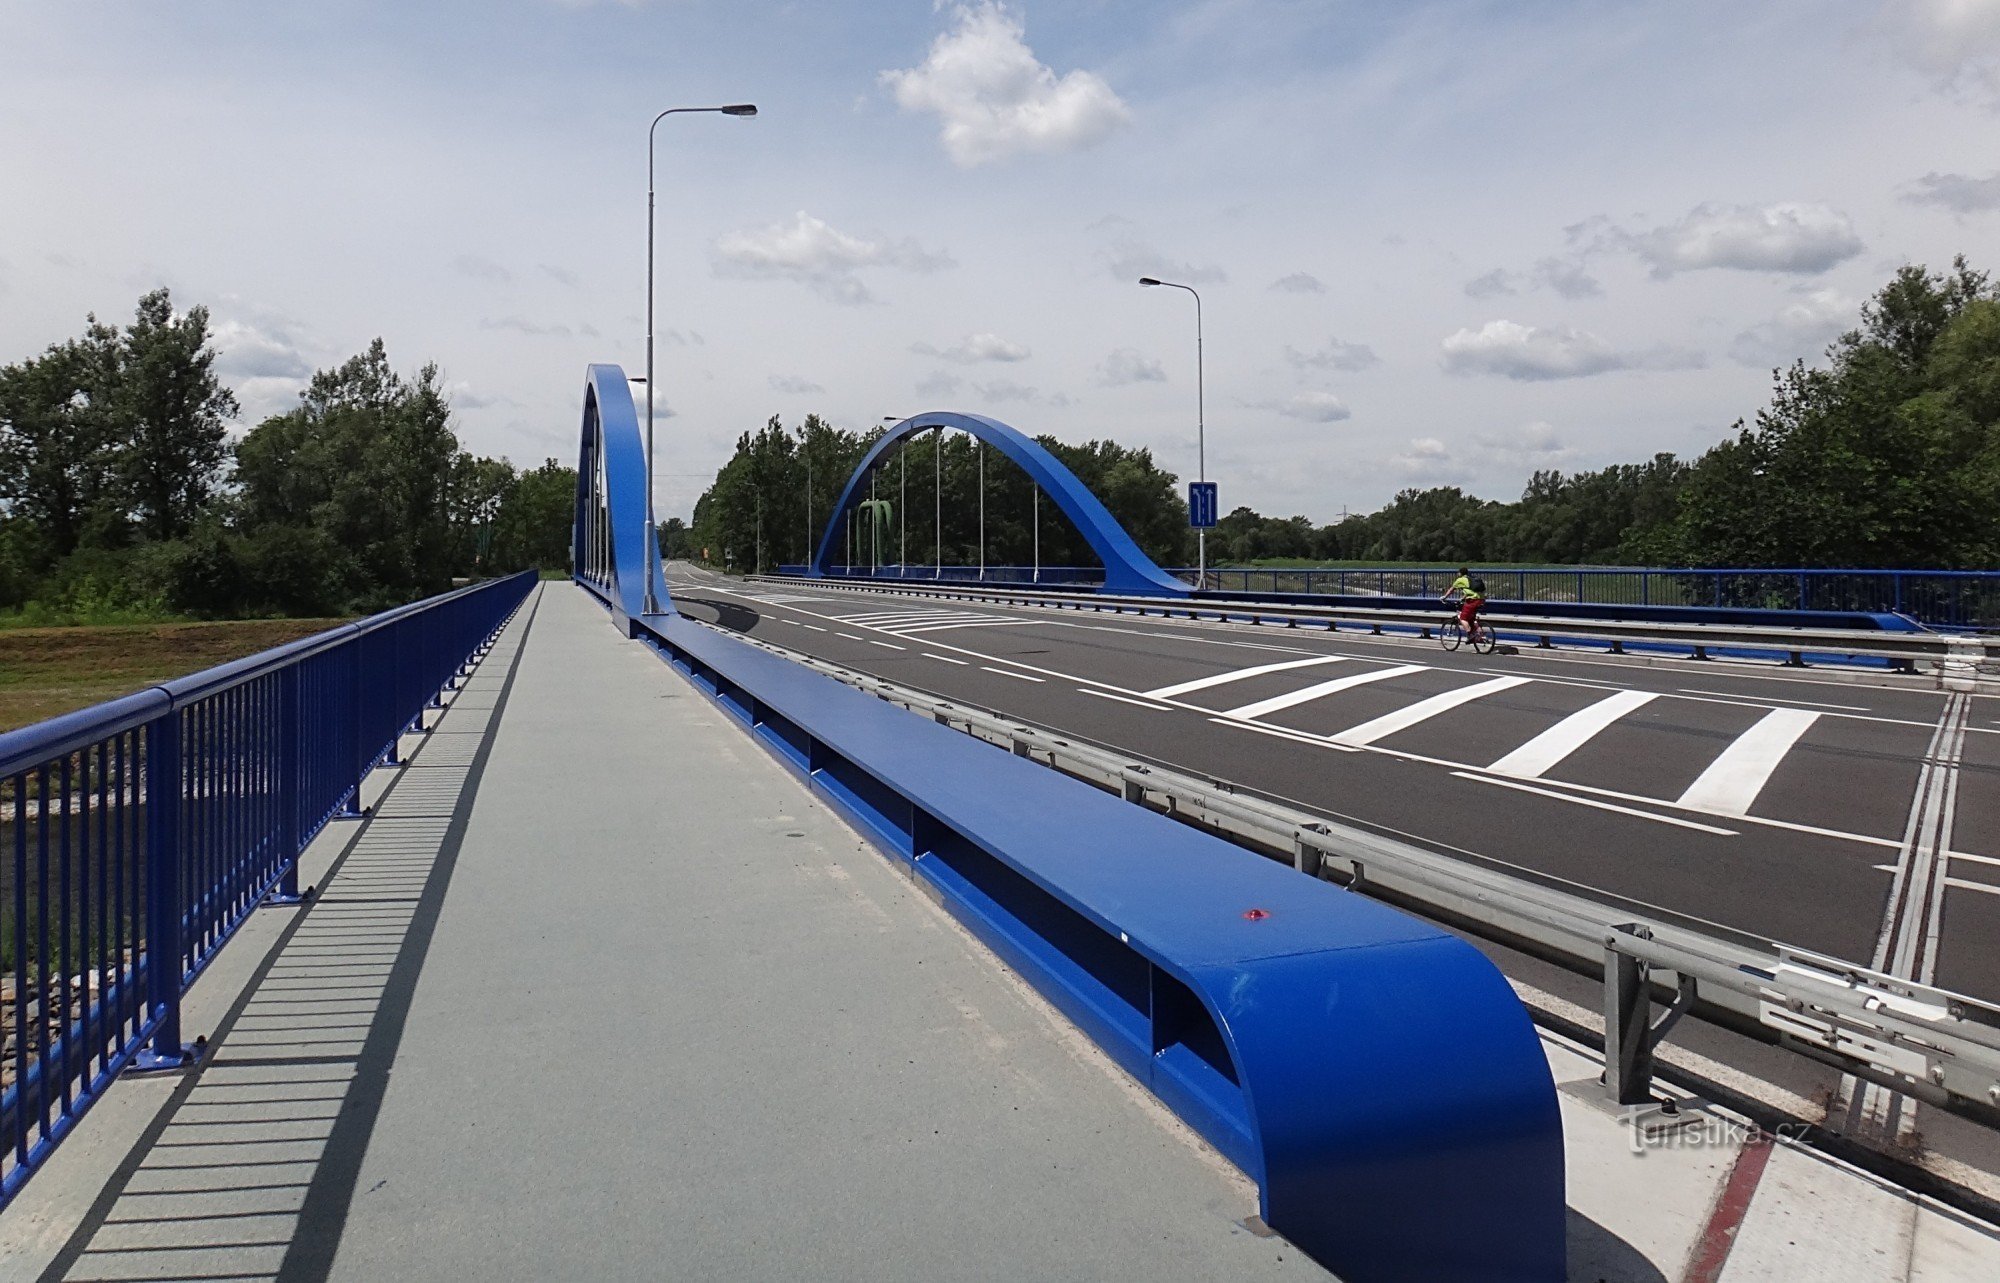 Karviná bro og vej repareret efter oversvømmelser